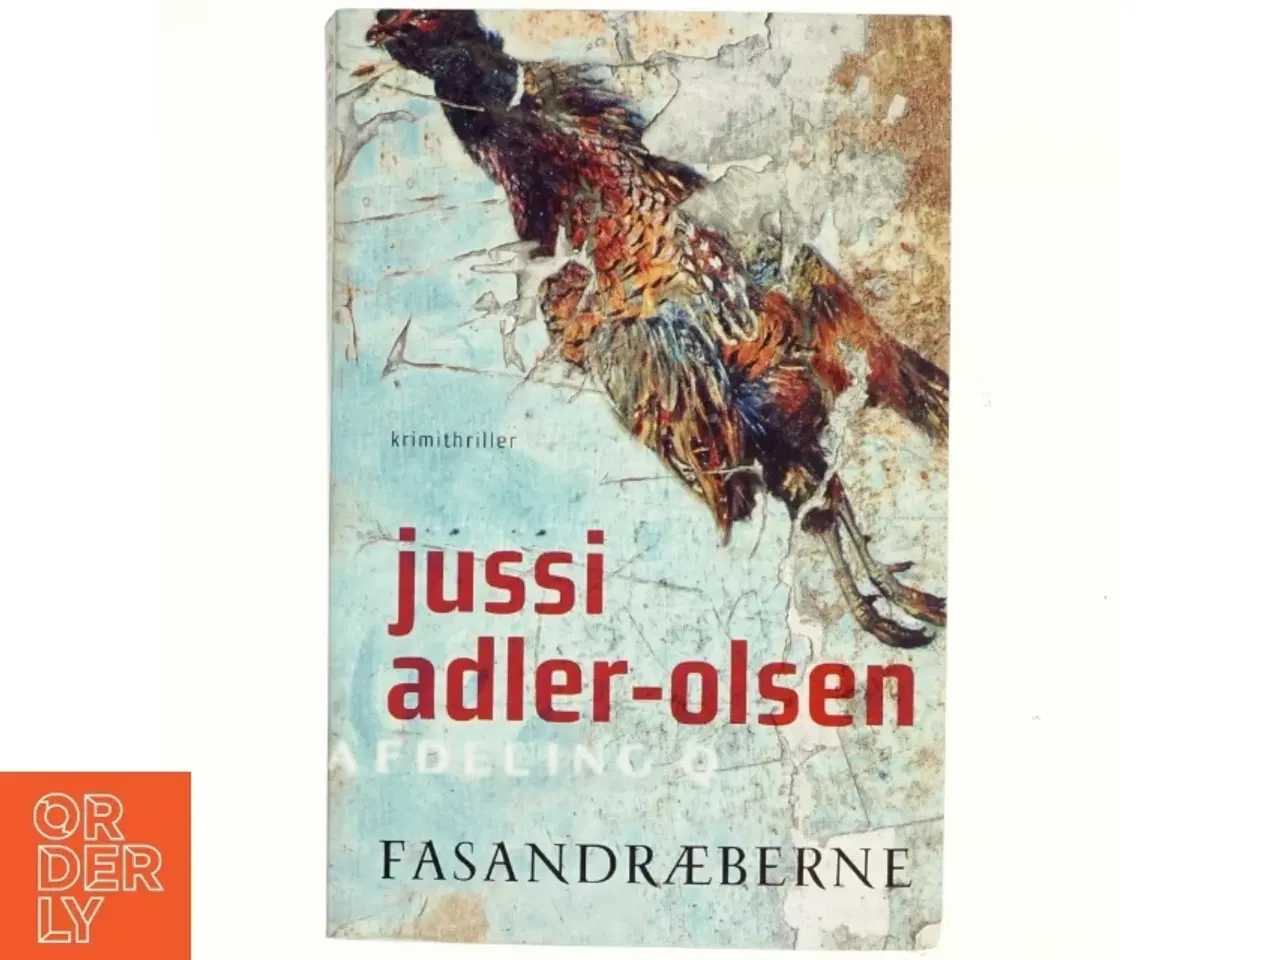 Billede 1 - Fasandræberne : krimithriller af Jussi Adler-Olsen (Bog)